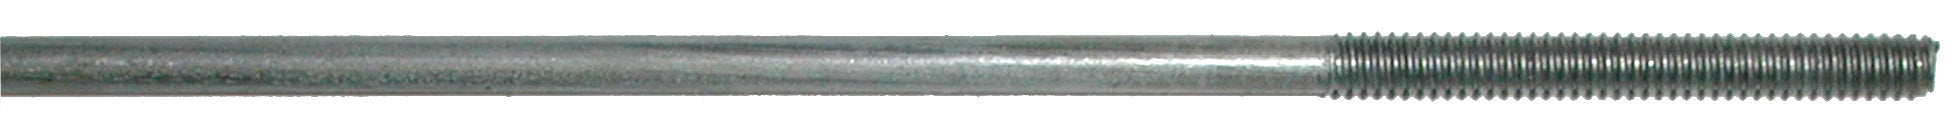 Sullivan Double Threaded 3mm Rod Assortment SLN541